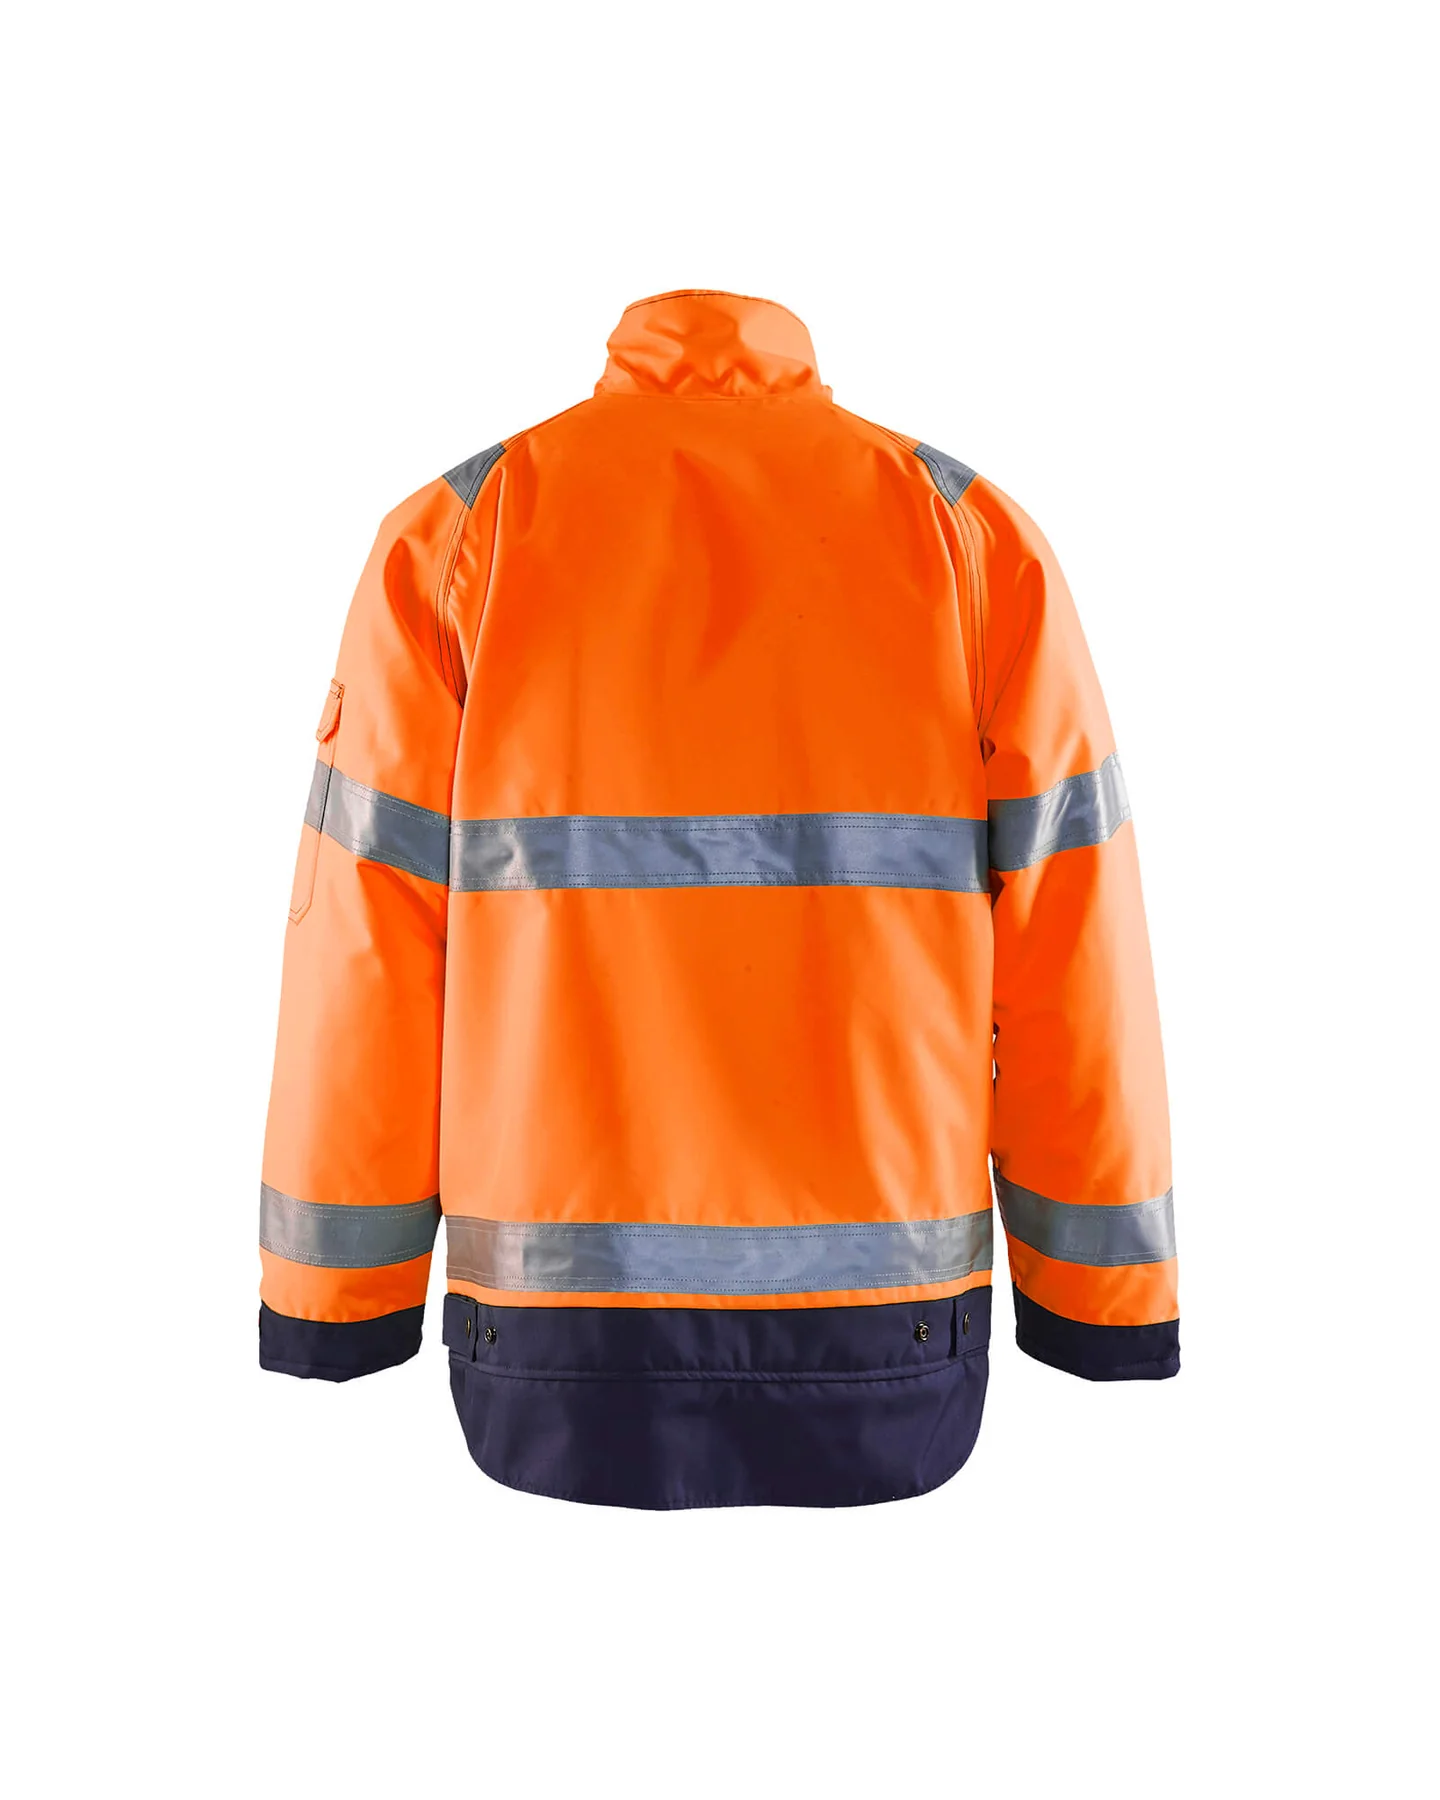 blaklader-hi-vis-winter-jacket-48271977-orange-navy-blue-4-1800×1800.webp